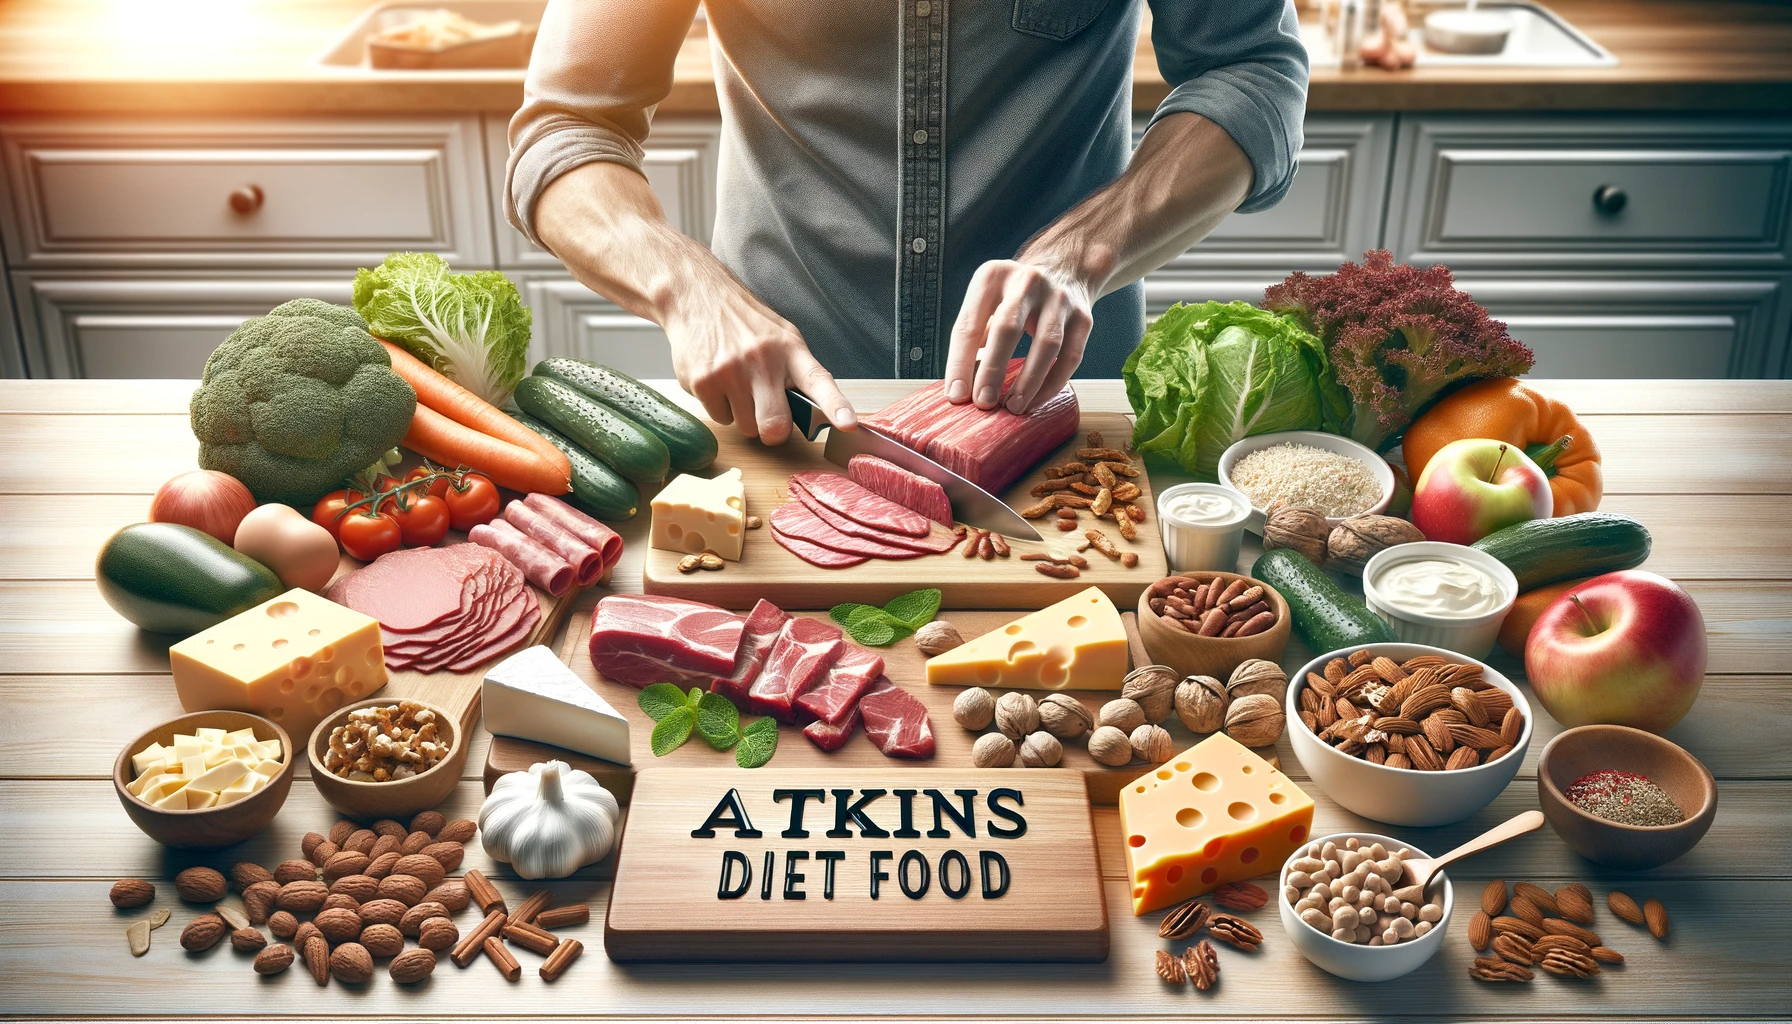 Atkins Diet Food